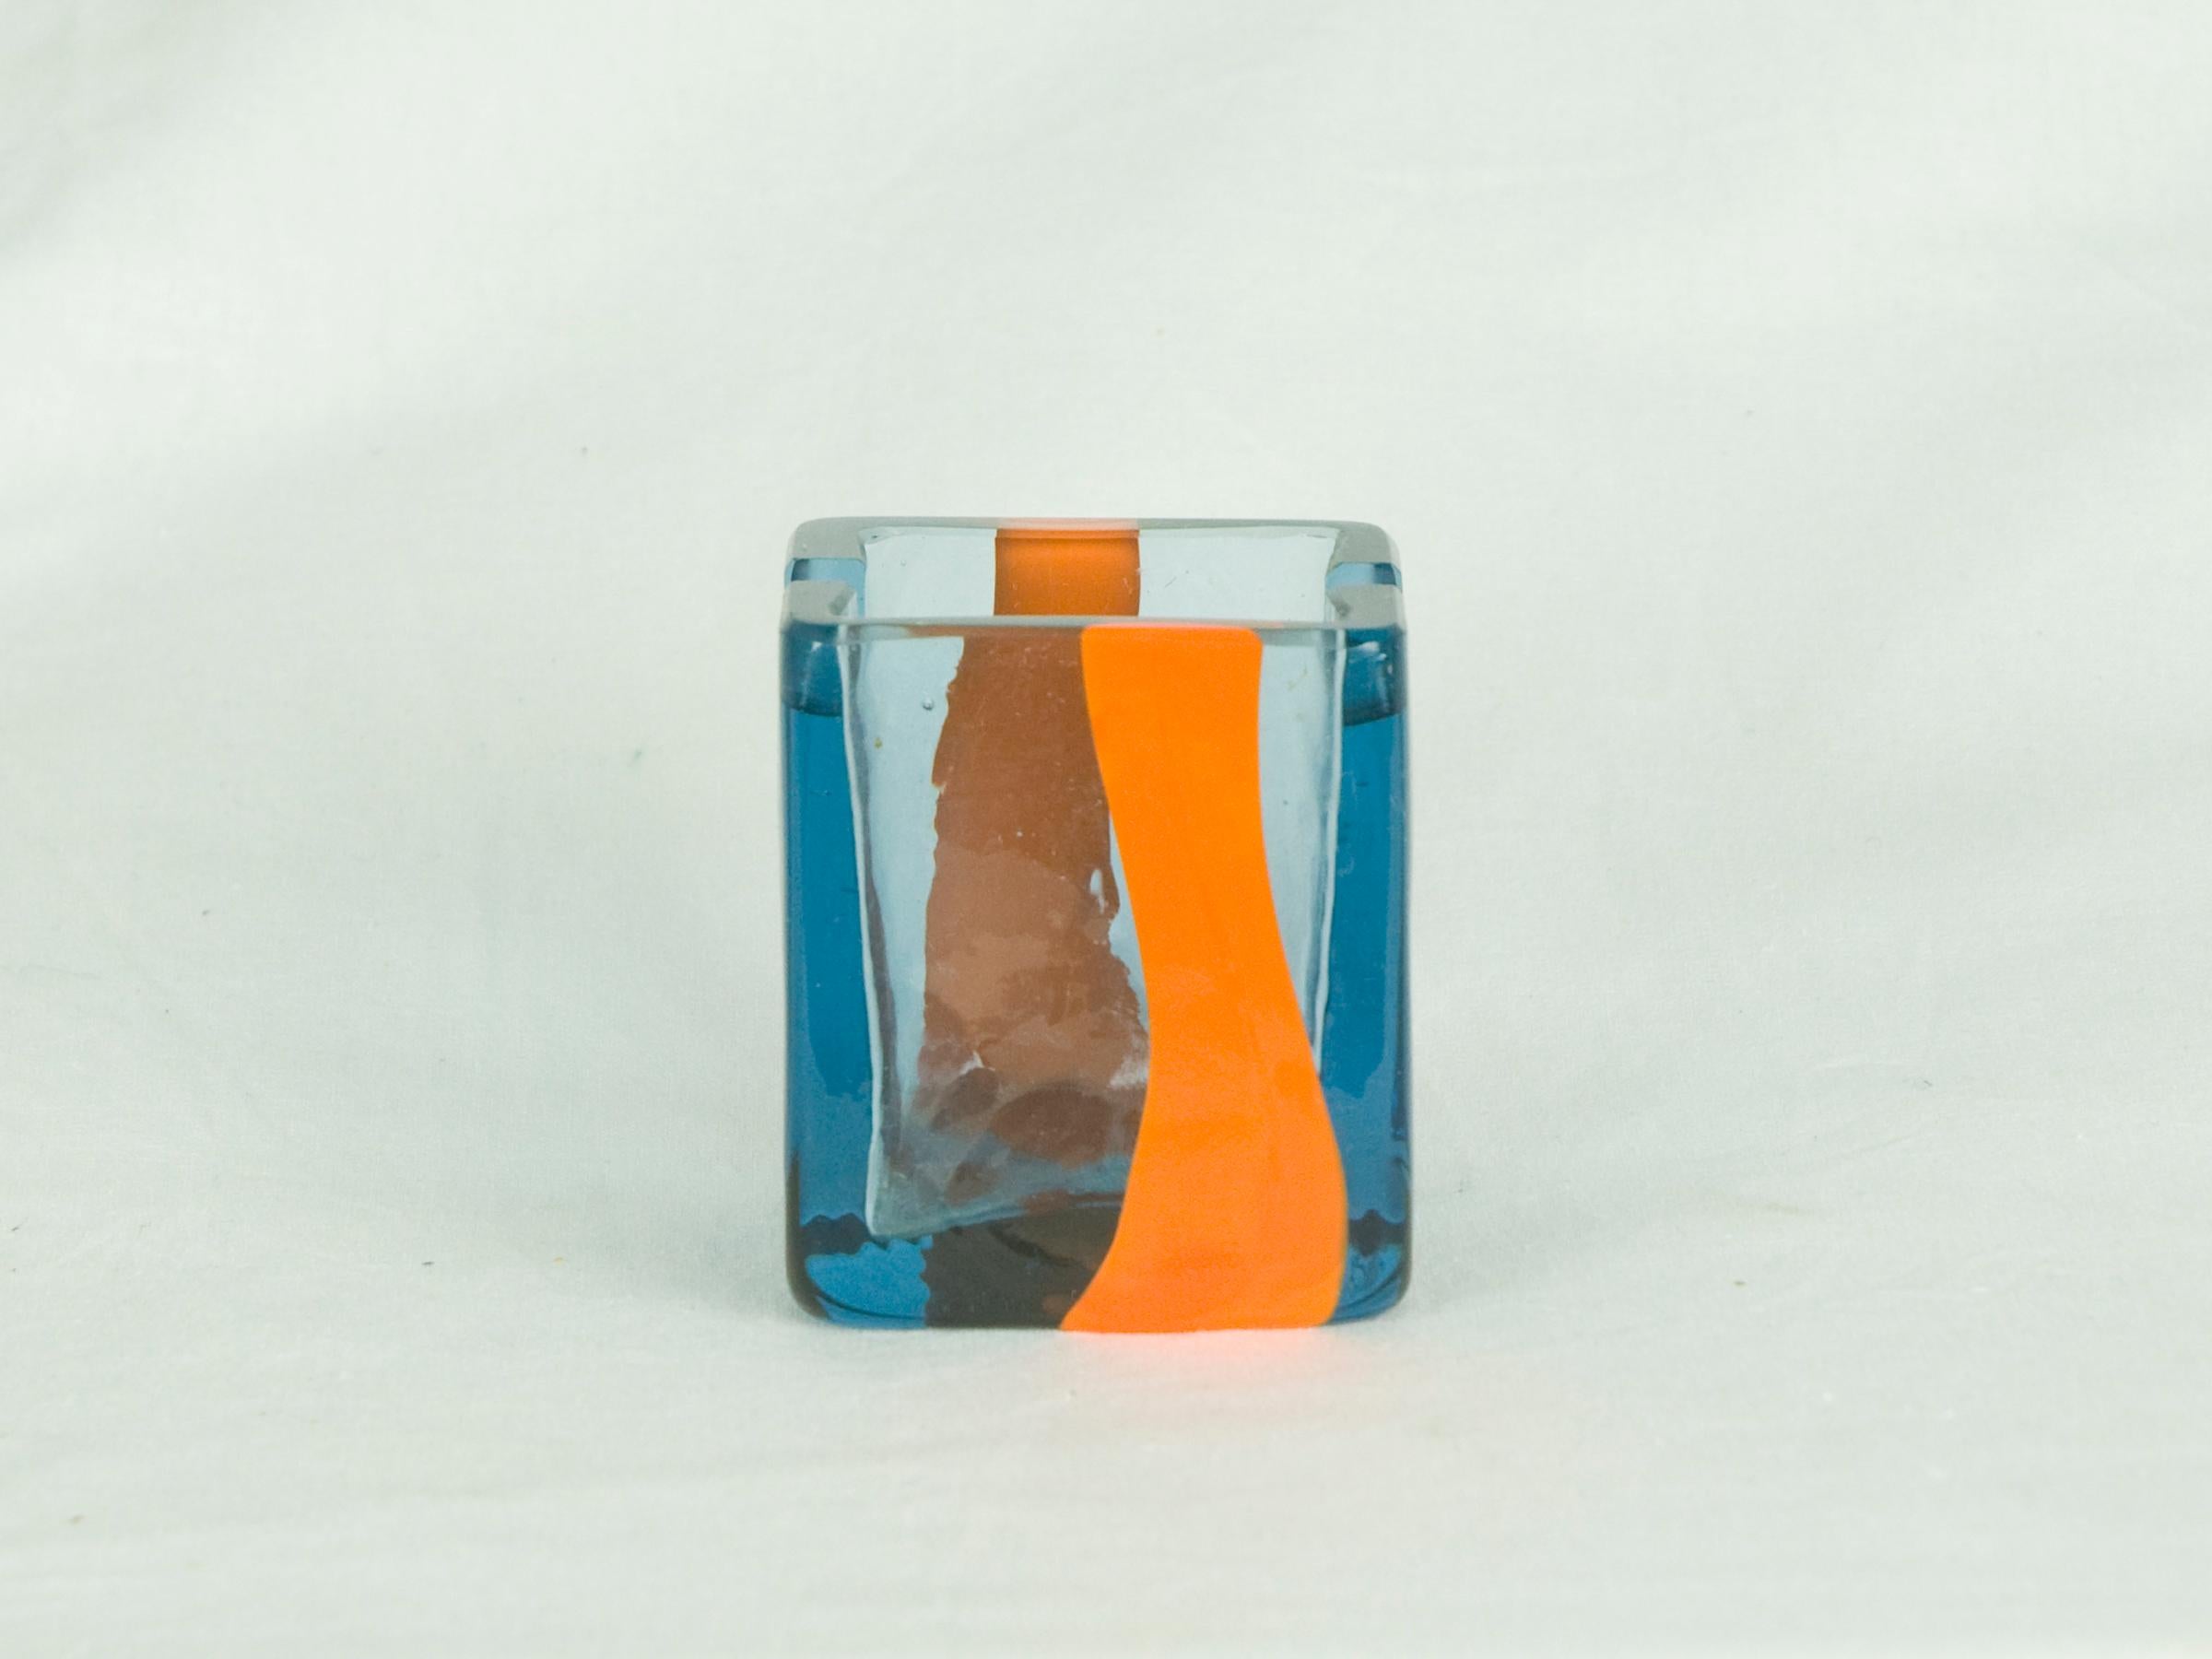 Ce petit cendrier a été conçu par Pierre Cardin pour Venini dans les années 1960. Il est exécuté en bleu électrique avec une bande orange. Signature gravée 